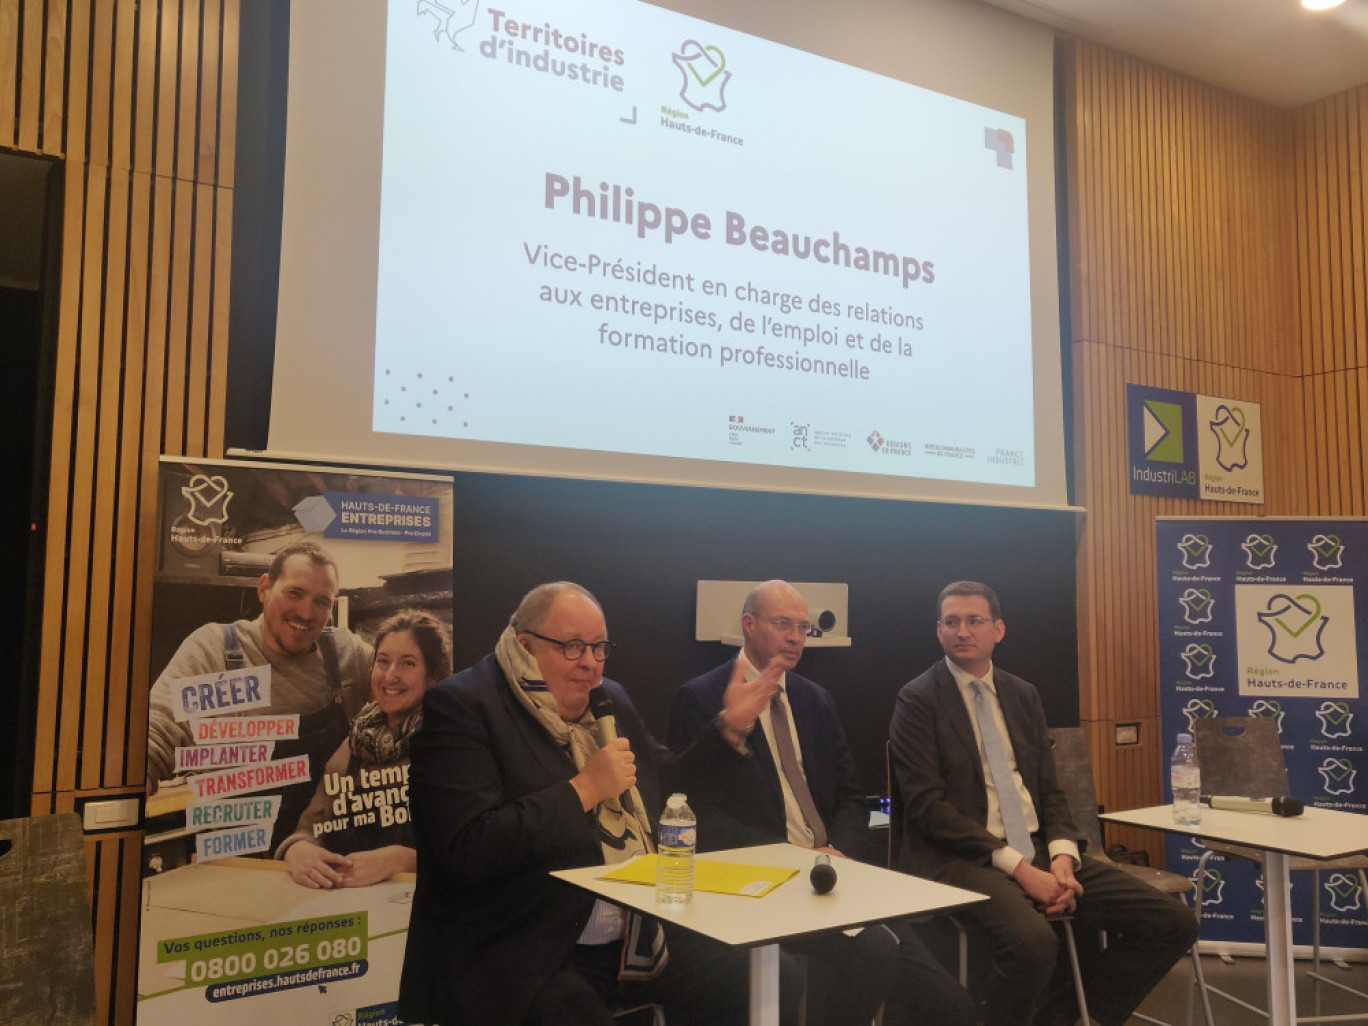 Philippe Beauchamps, Stéphane Leuleu et Jean-Baptiste Gueusquin. (c)Aletheia Press/ DLP